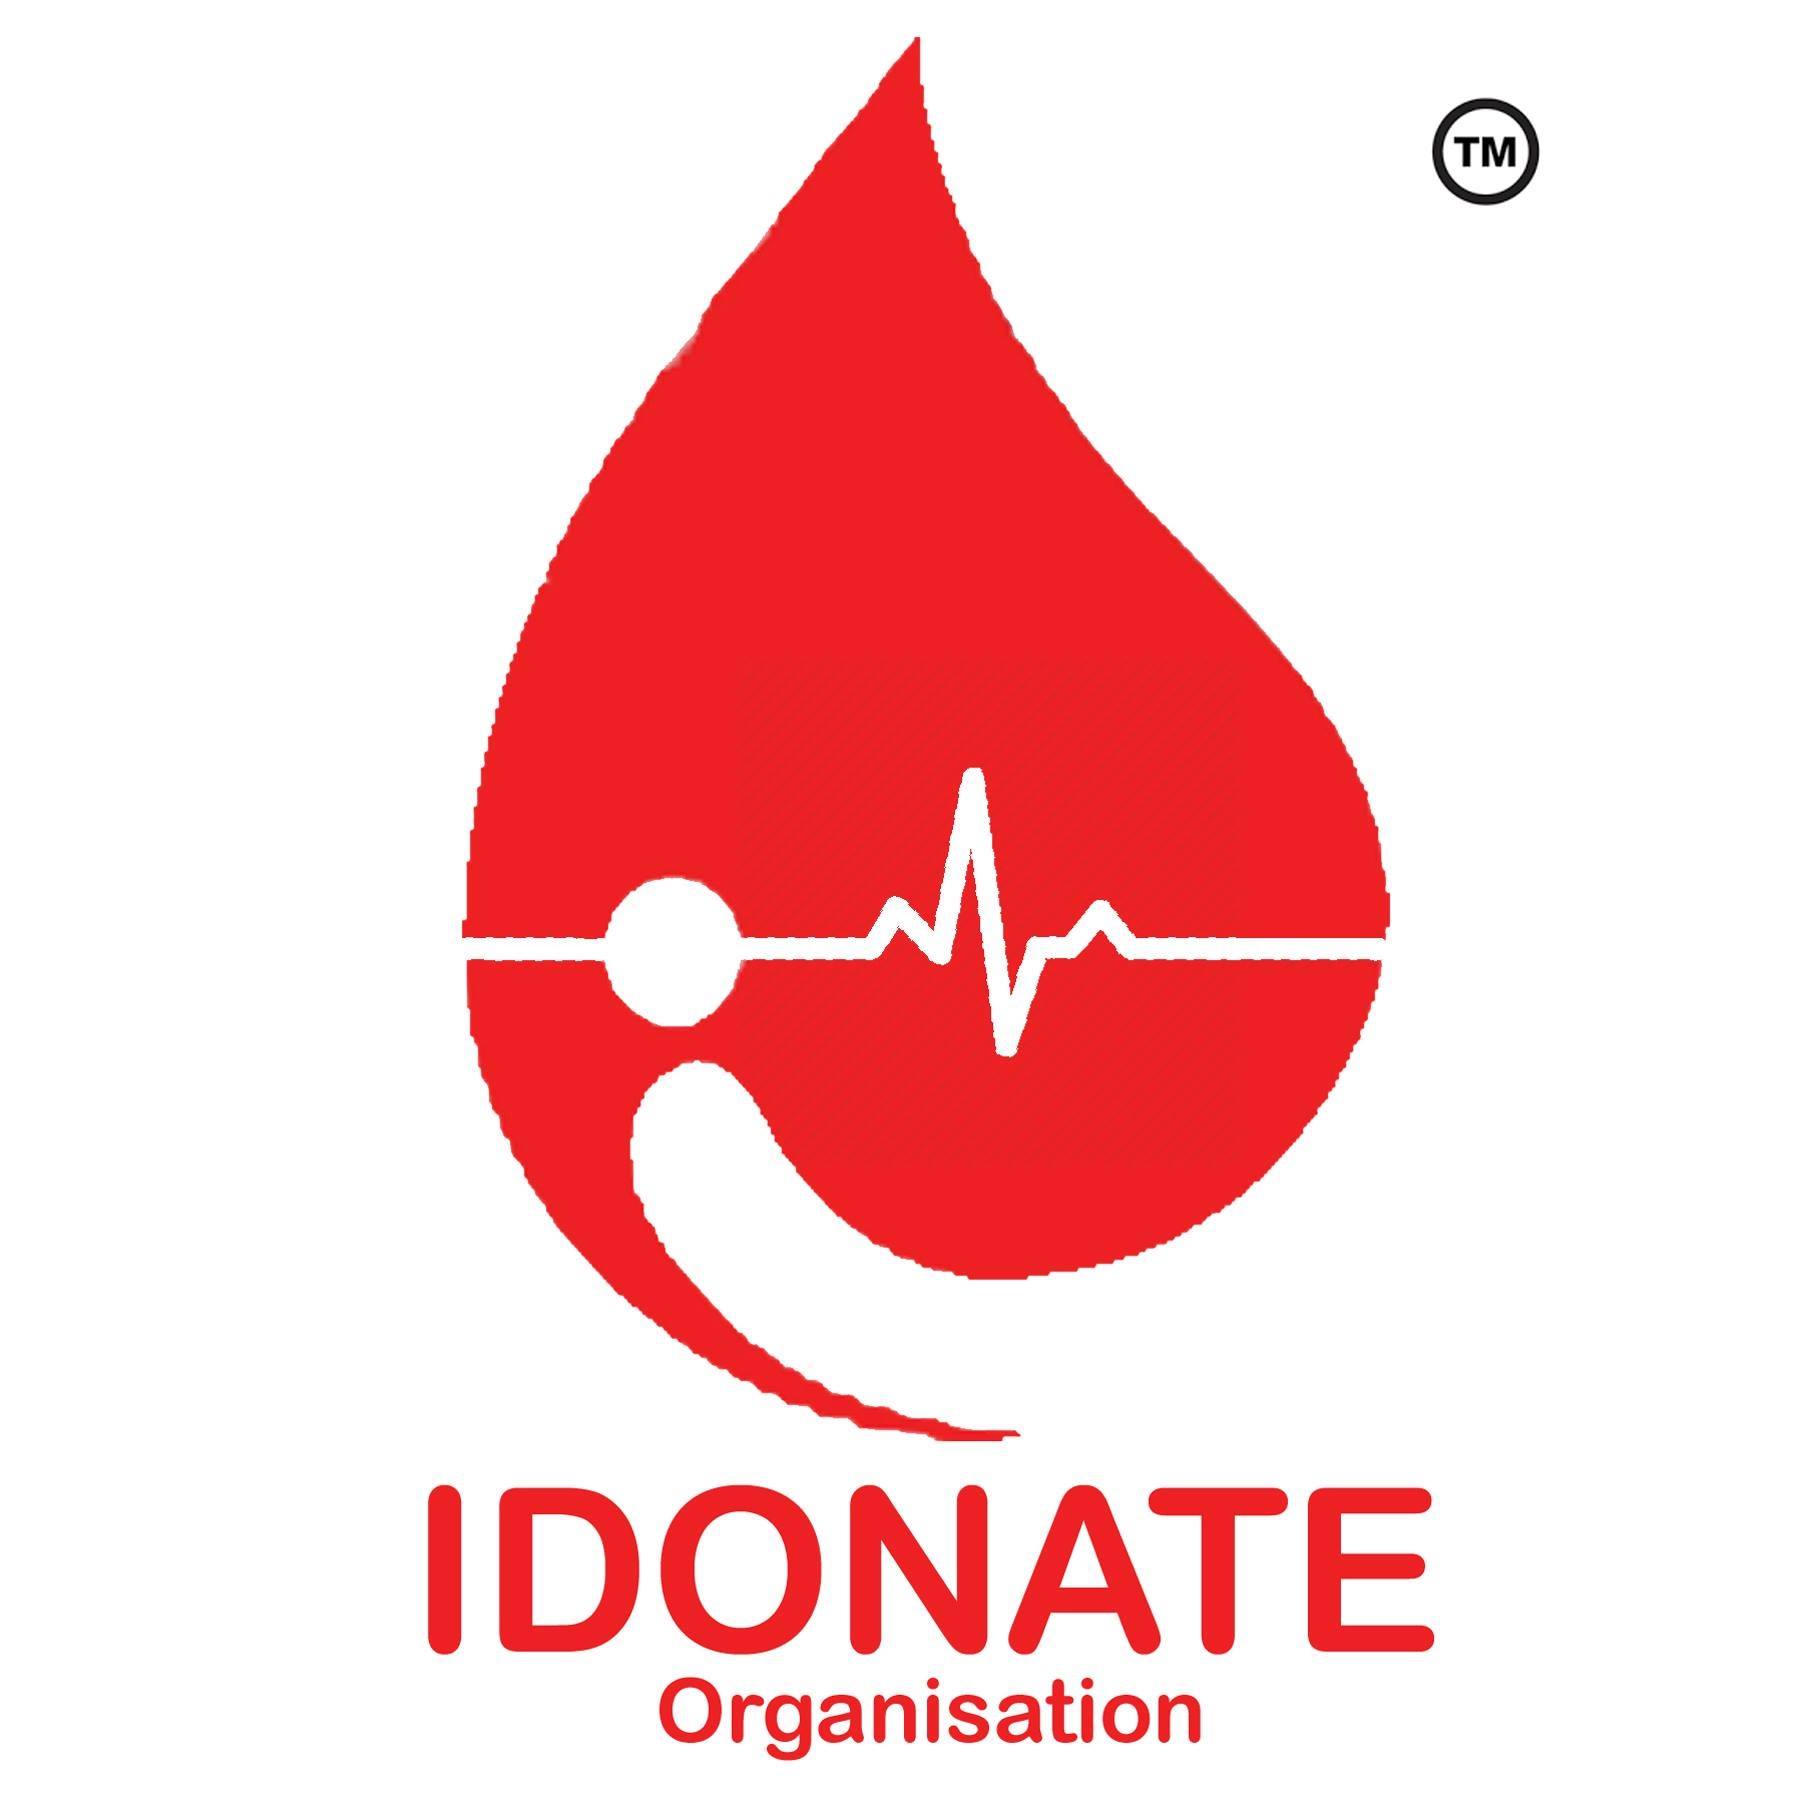 I Donate Organisation logo